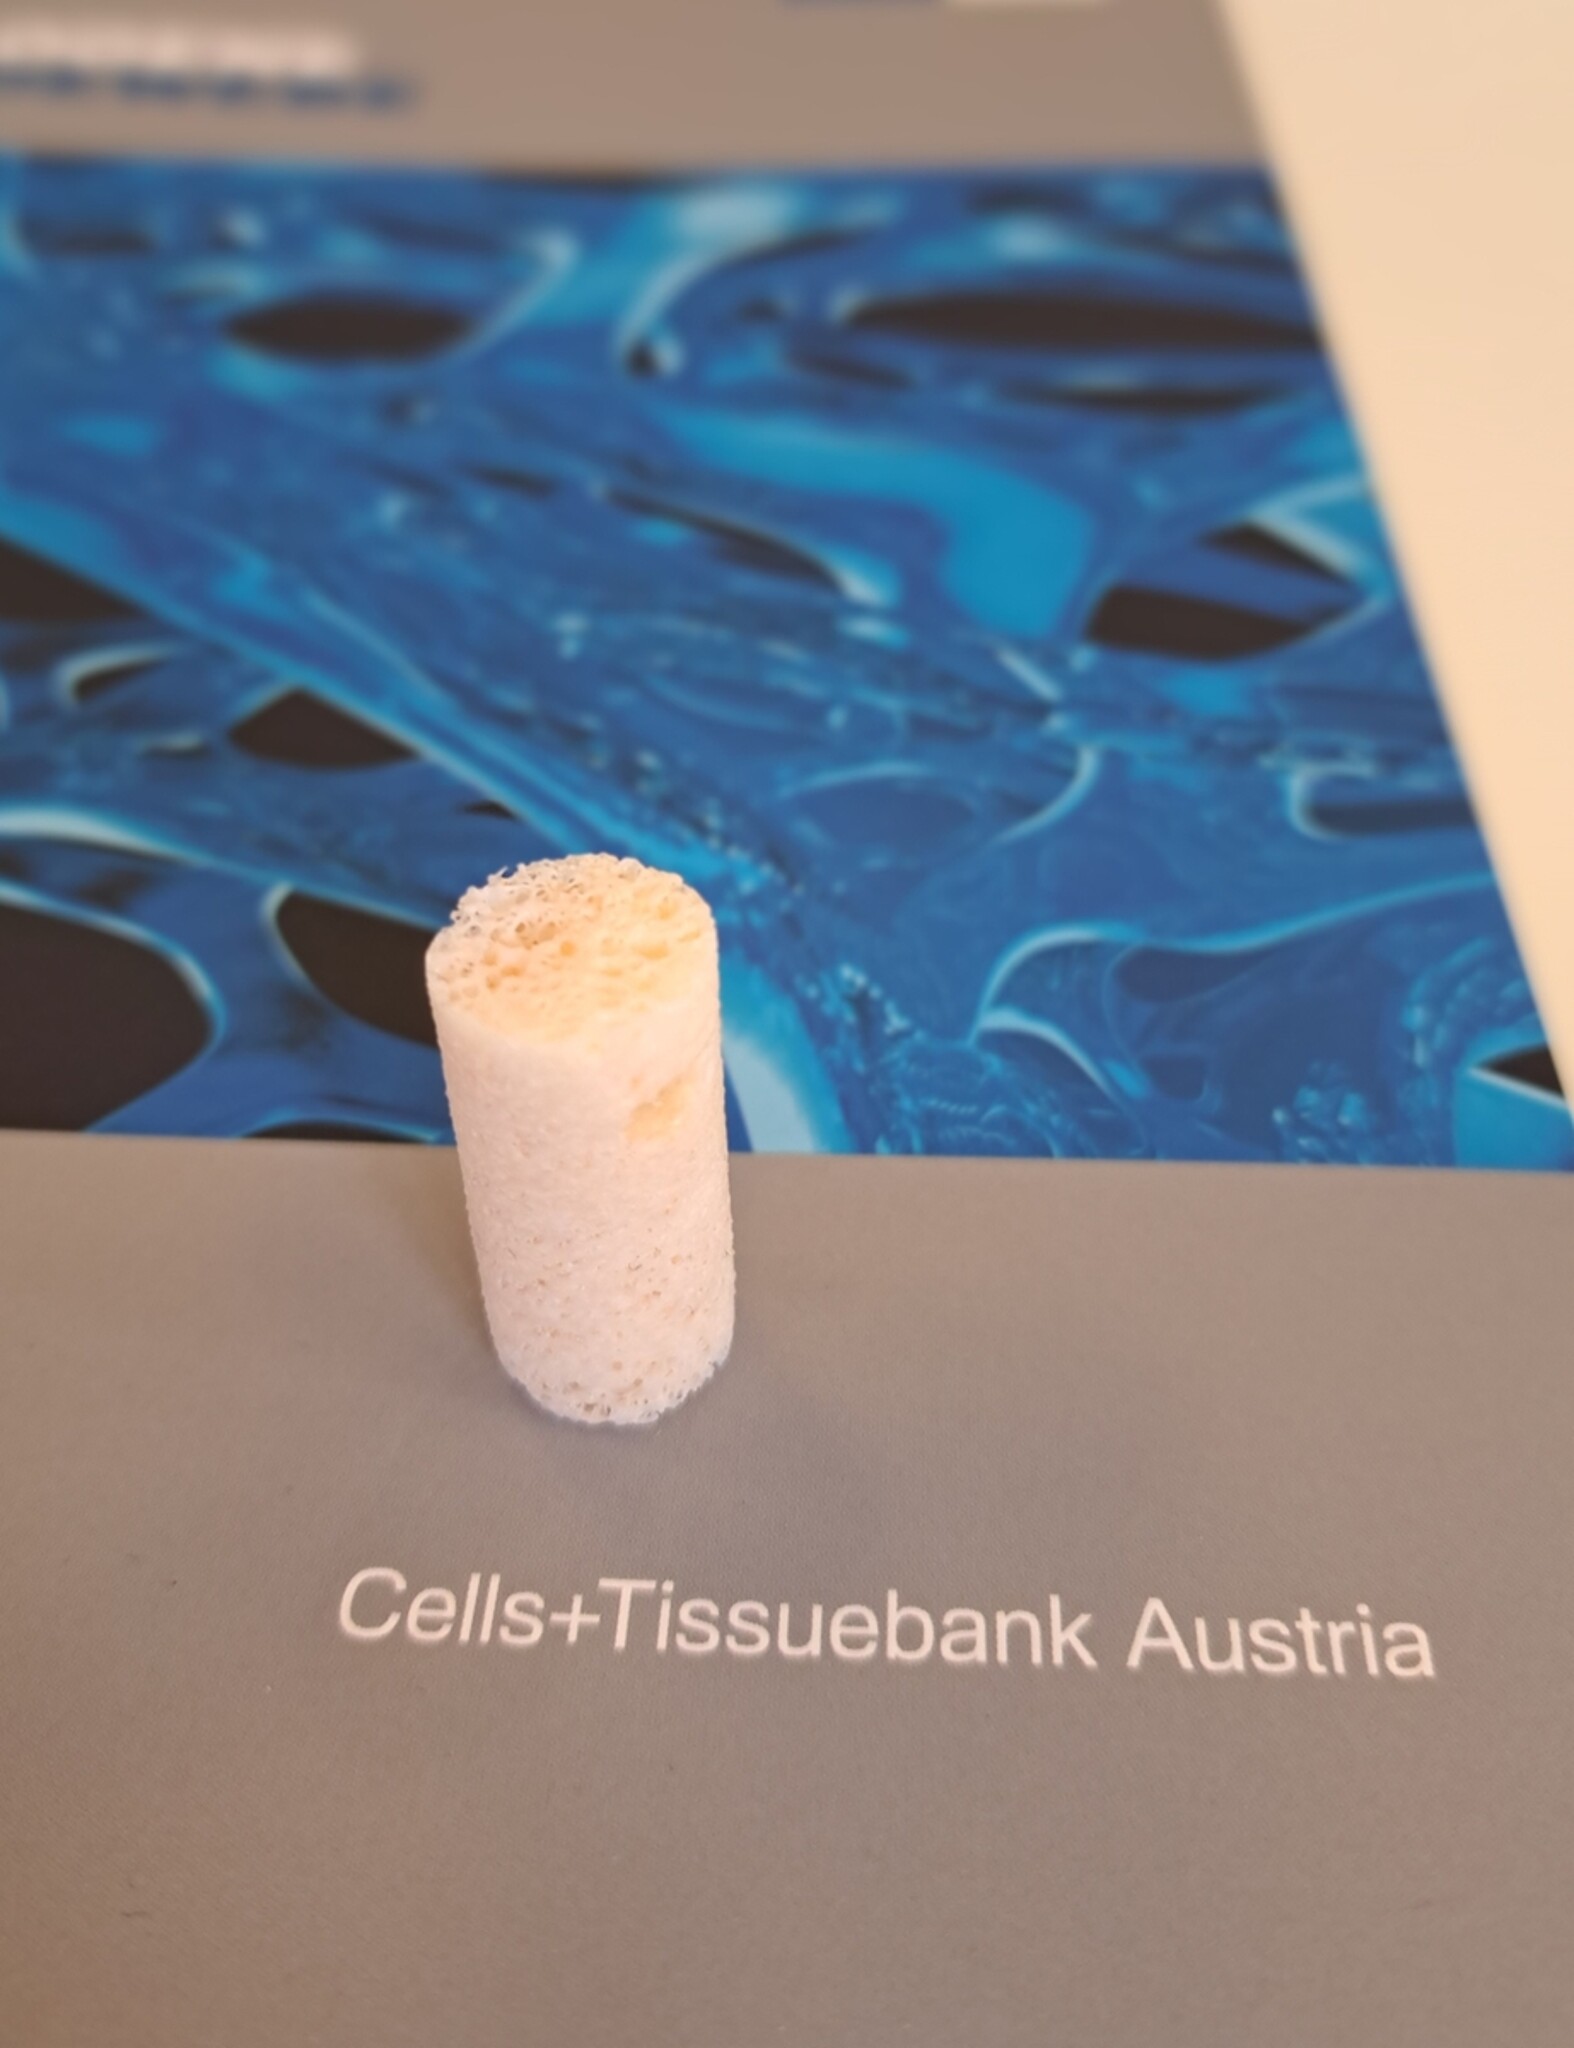 Ein aufbereiteter Knochenteil für die Verwendung in einem Bohrkanal steht auf dem Prospekt der Cells + Tissuebank Austria